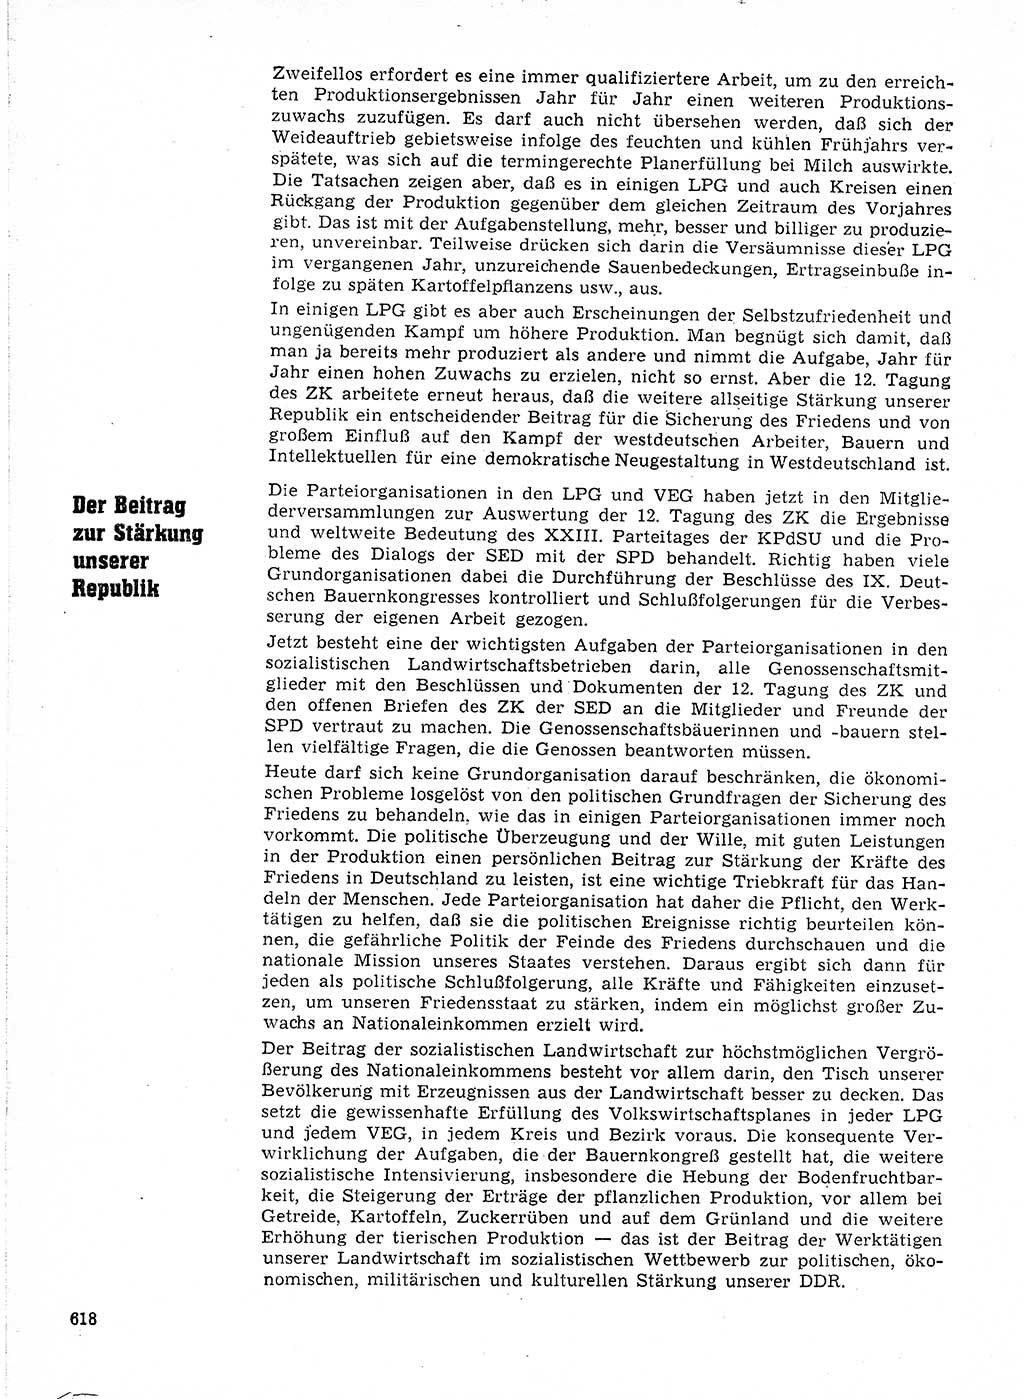 Neuer Weg (NW), Organ des Zentralkomitees (ZK) der SED (Sozialistische Einheitspartei Deutschlands) für Fragen des Parteilebens, 21. Jahrgang [Deutsche Demokratische Republik (DDR)] 1966, Seite 618 (NW ZK SED DDR 1966, S. 618)